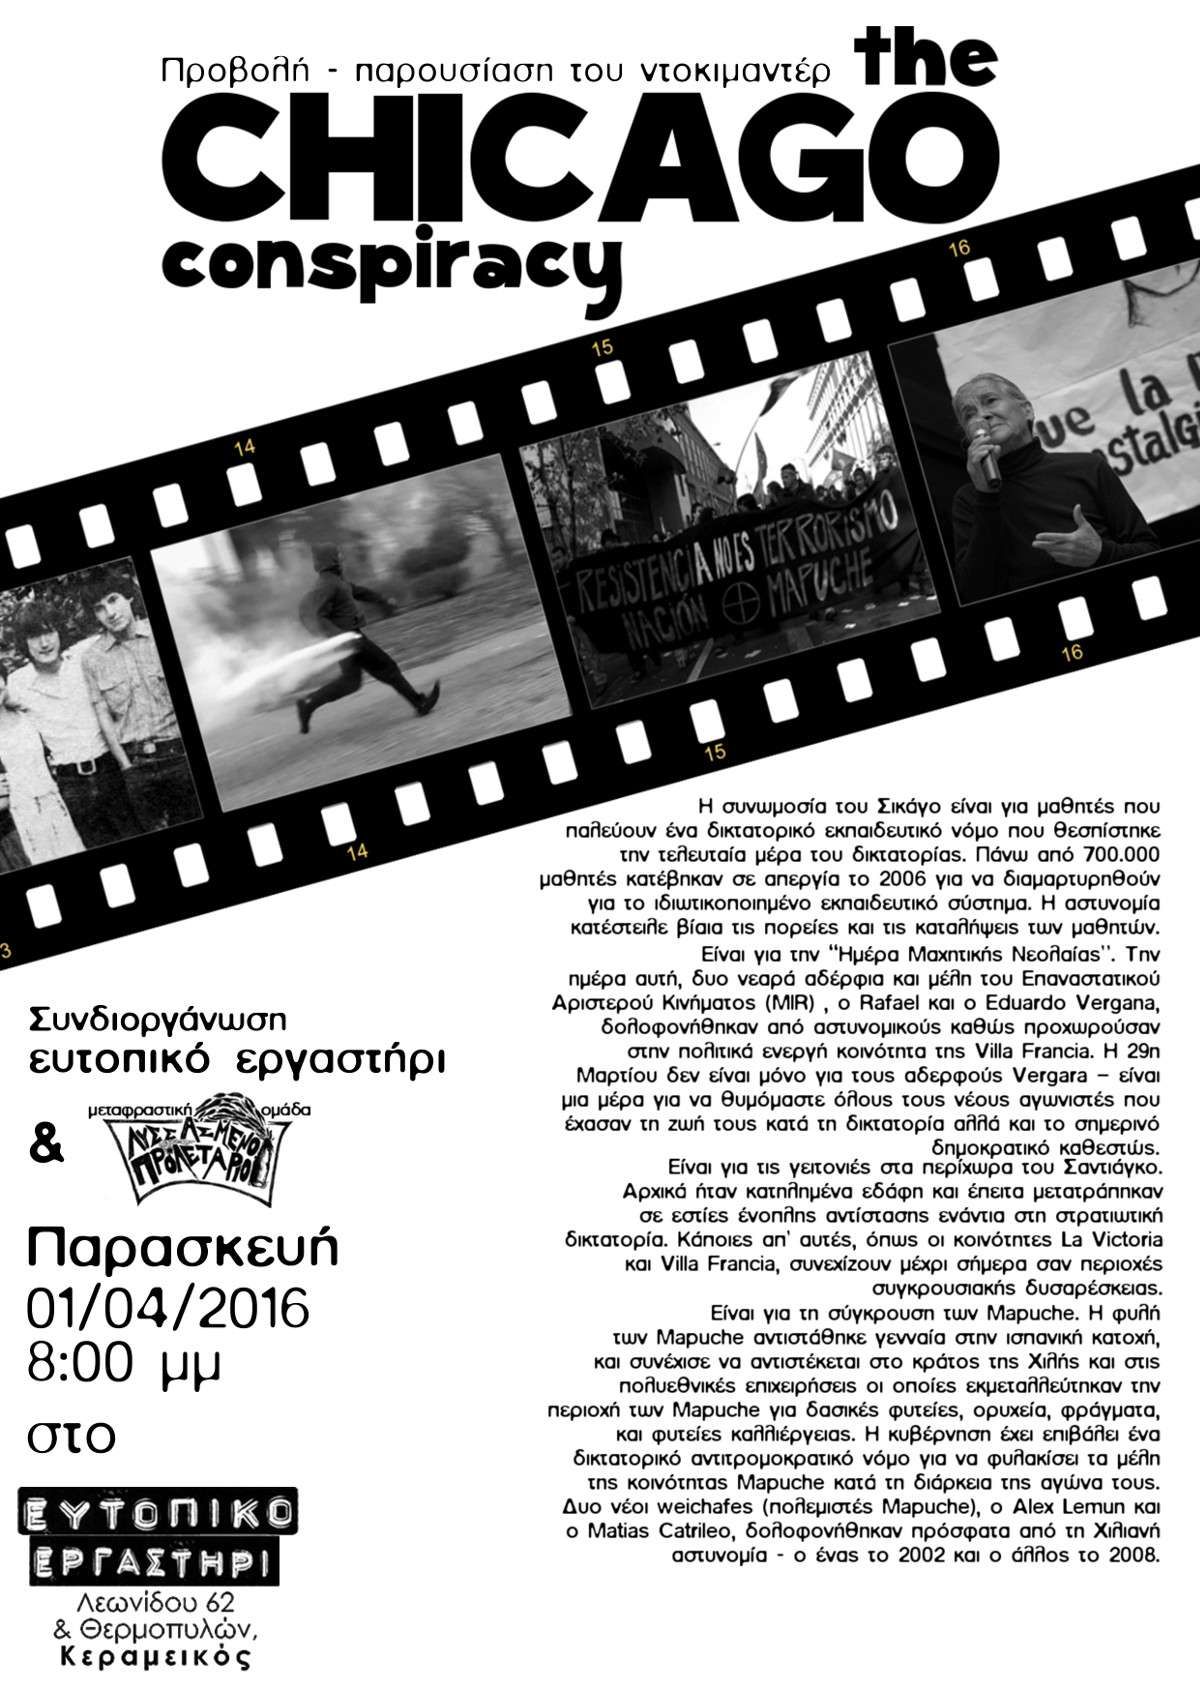 Αθήνα: Προβολή/παρουσίαση του ντοκιμαντέρ “The Chicago Conspiracy”